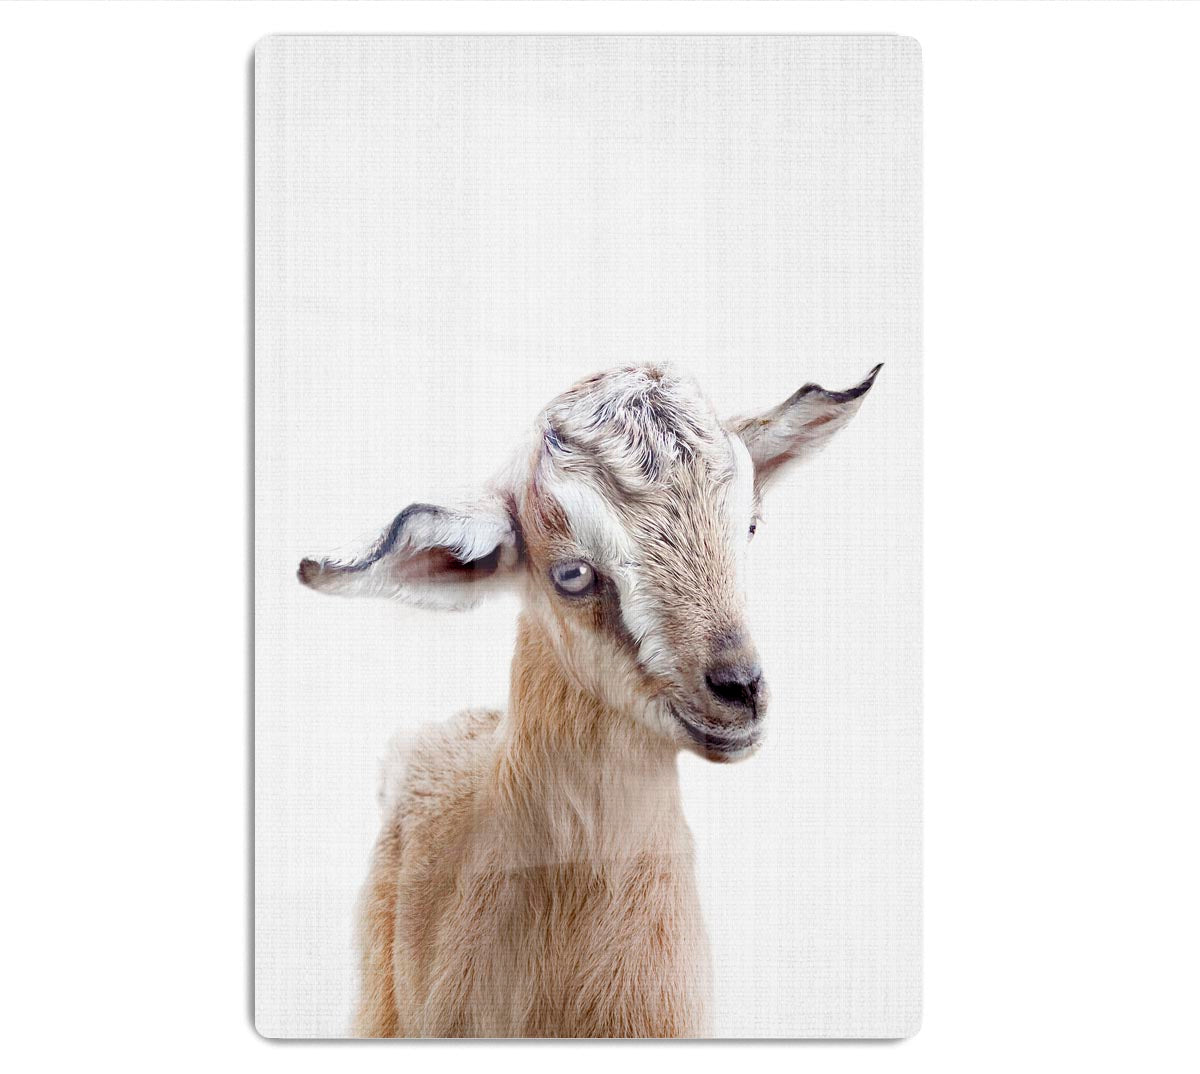 Peekaboo Baby Goat Acrylic Block - 1x - 1